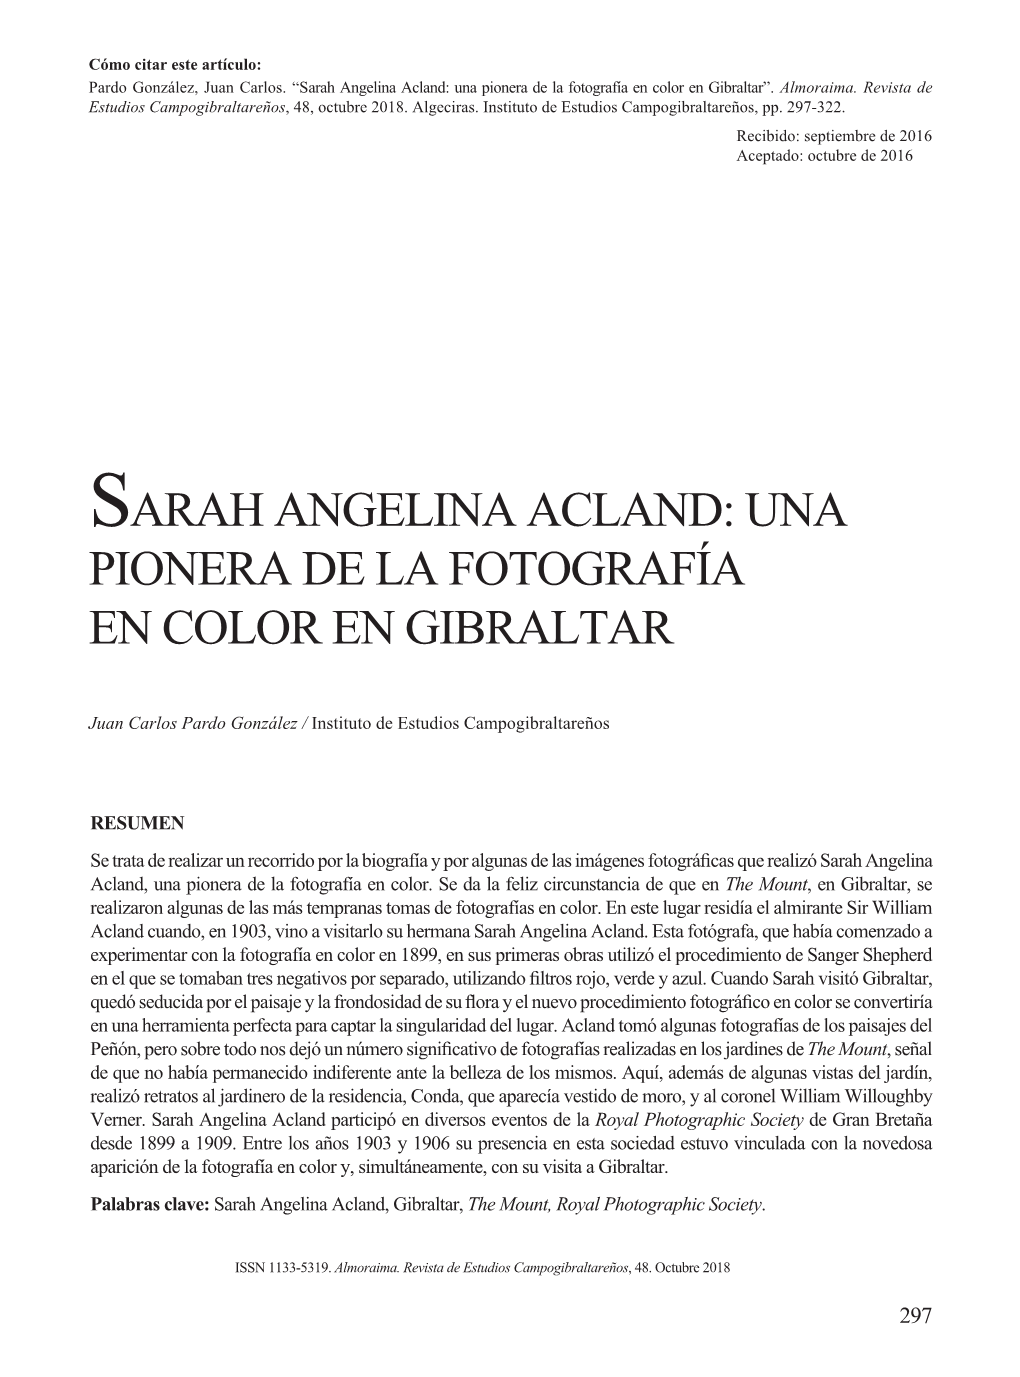 Sarah Angelina Acland: Una Pionera De La Fotografía En Color En Gibraltar”